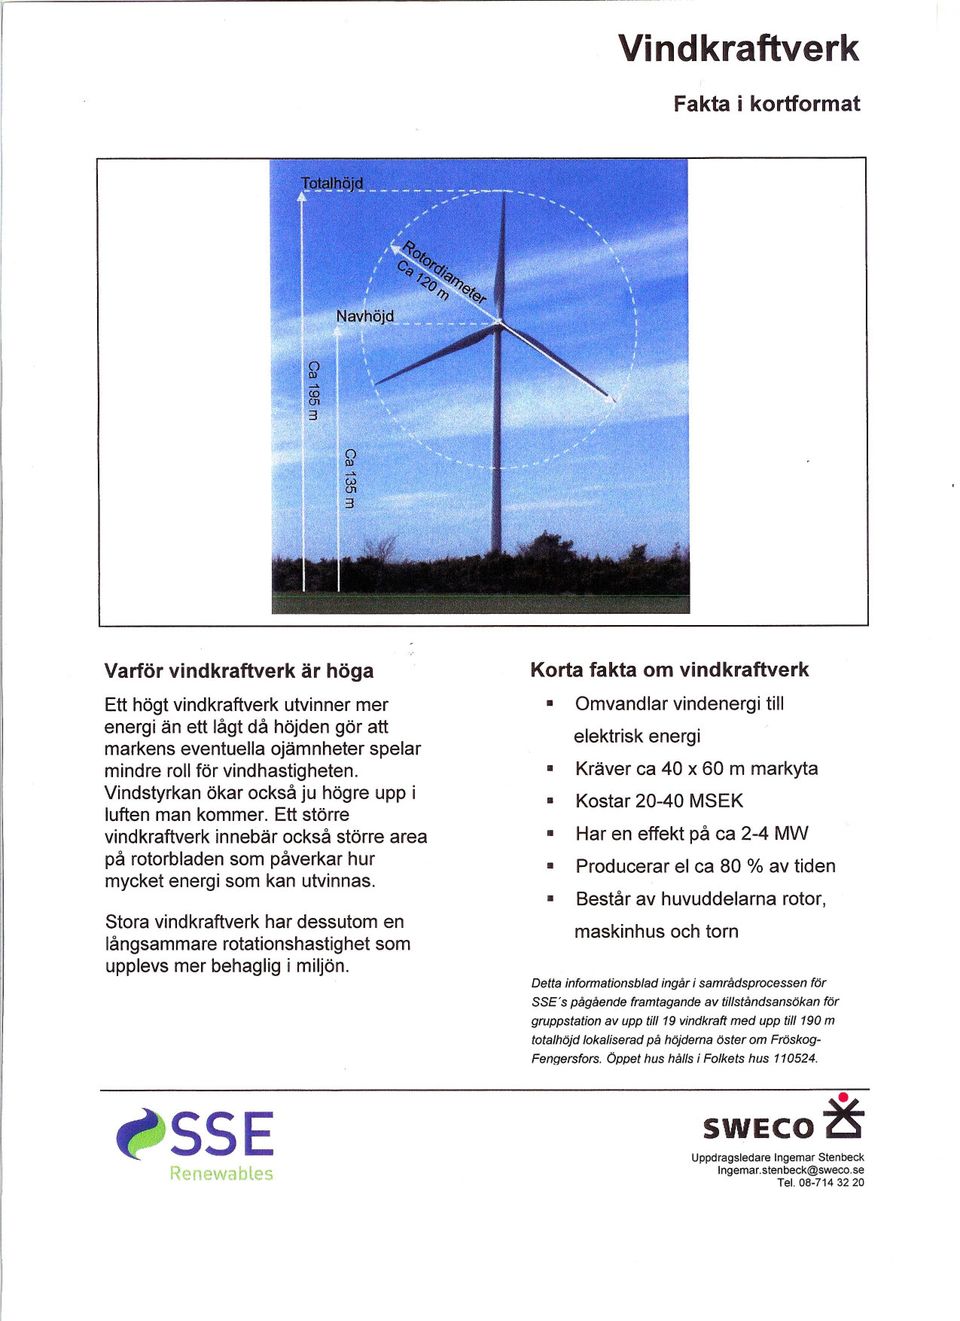 utvinnas Stora vindkraftverk har dessutom en långsammare rotationshastighet som upplevs mer behaglig i miljön RenewabLes Omvandlar vindenergi till elektrisk energi Kräver ca 40 x 60 m markyta Kostar